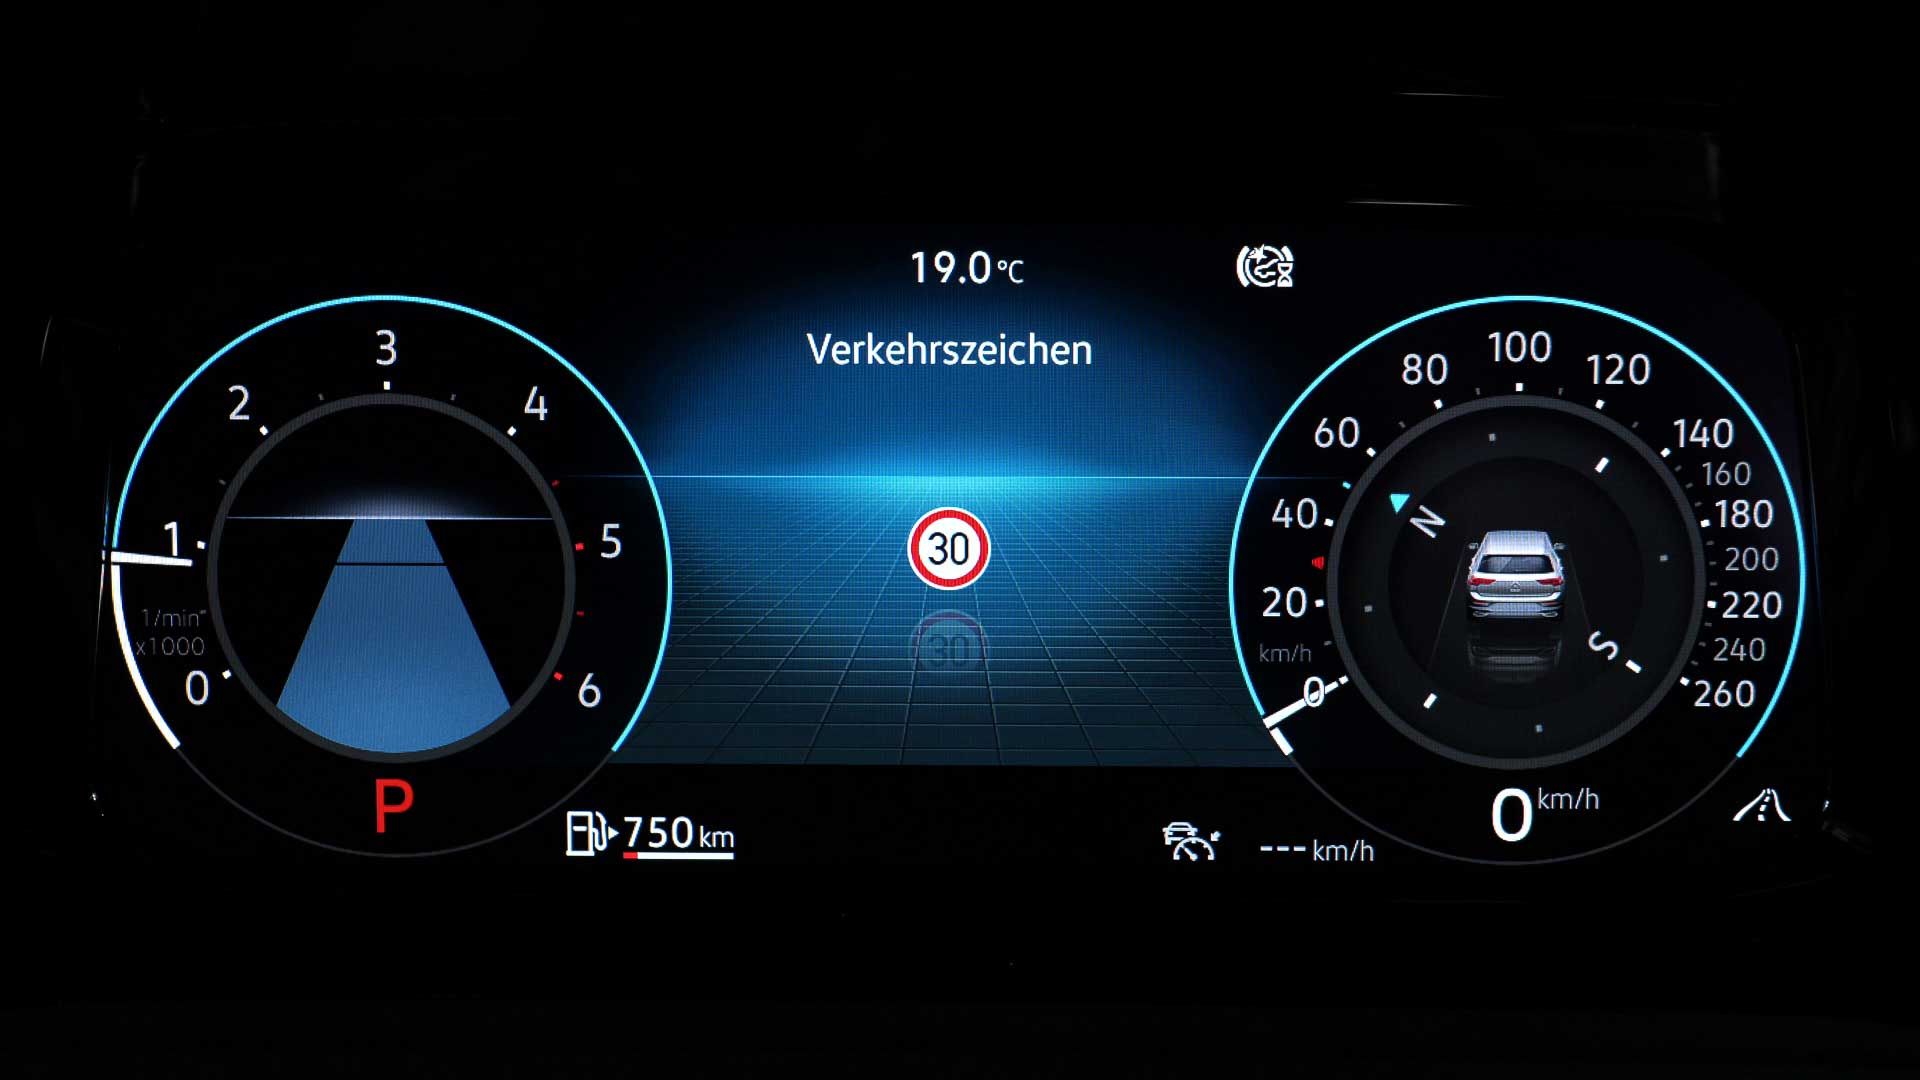 Bild des Digital Cockpit im Volkswagen Fahrzeug